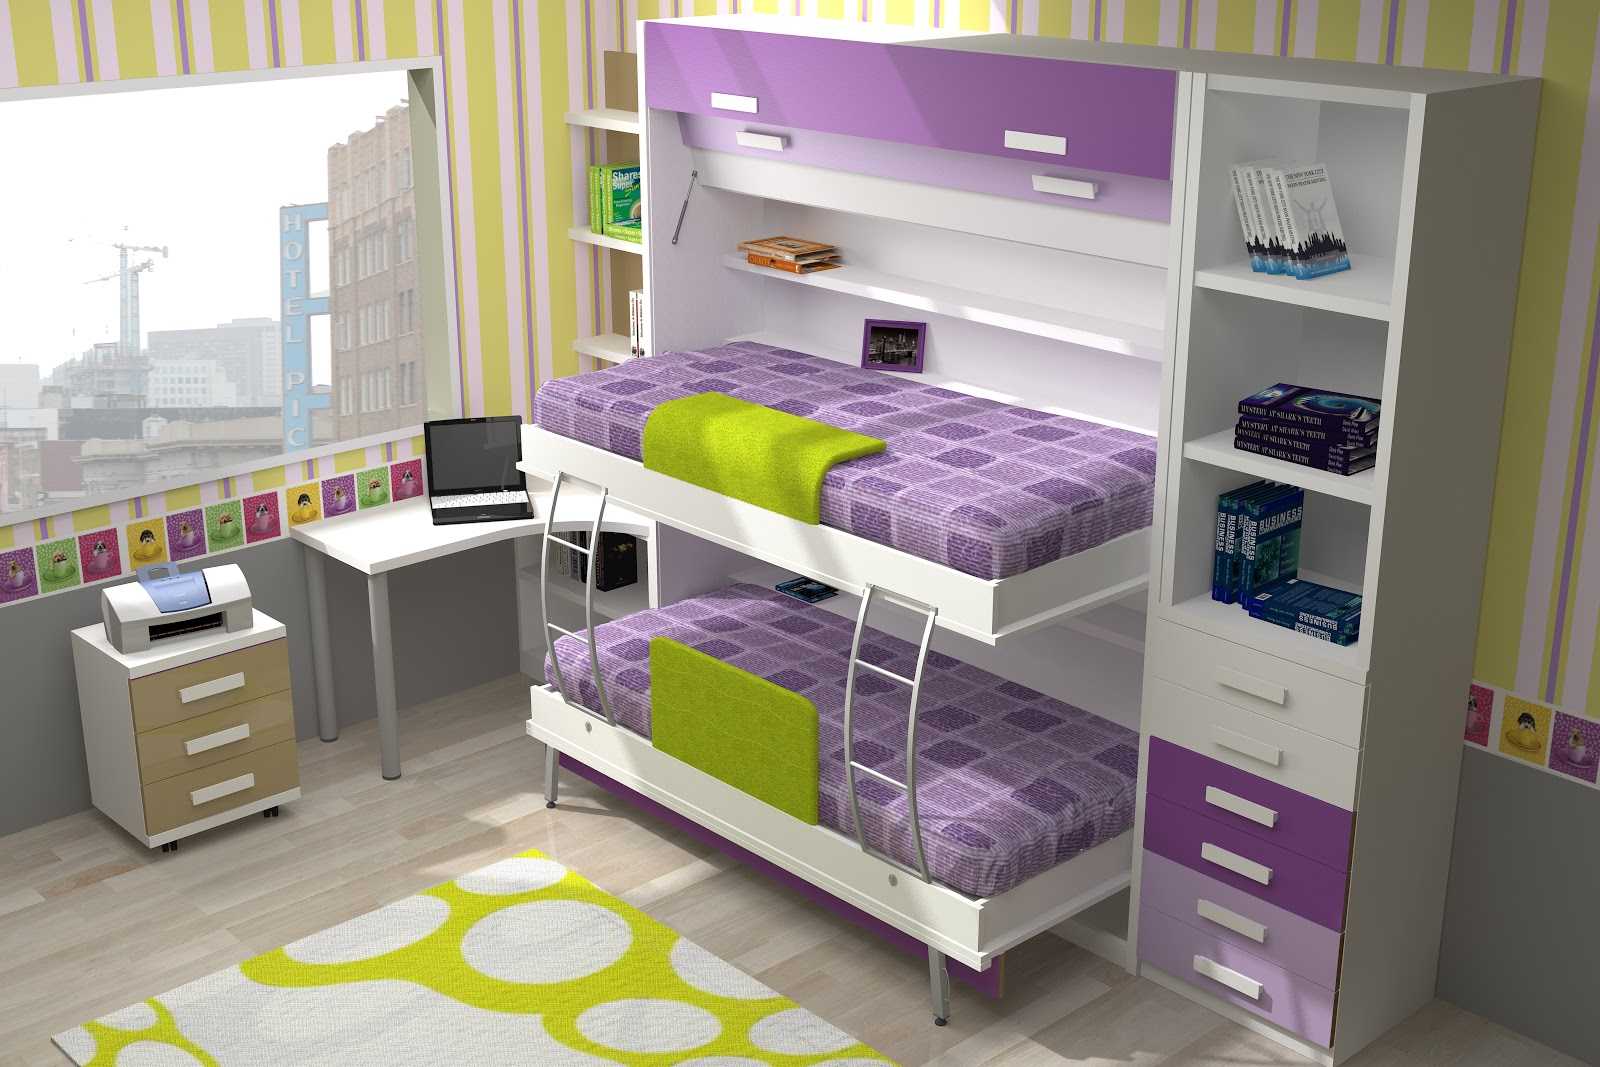 Функционал и особенности кроватей-трансформеров для малогабаритных квартир